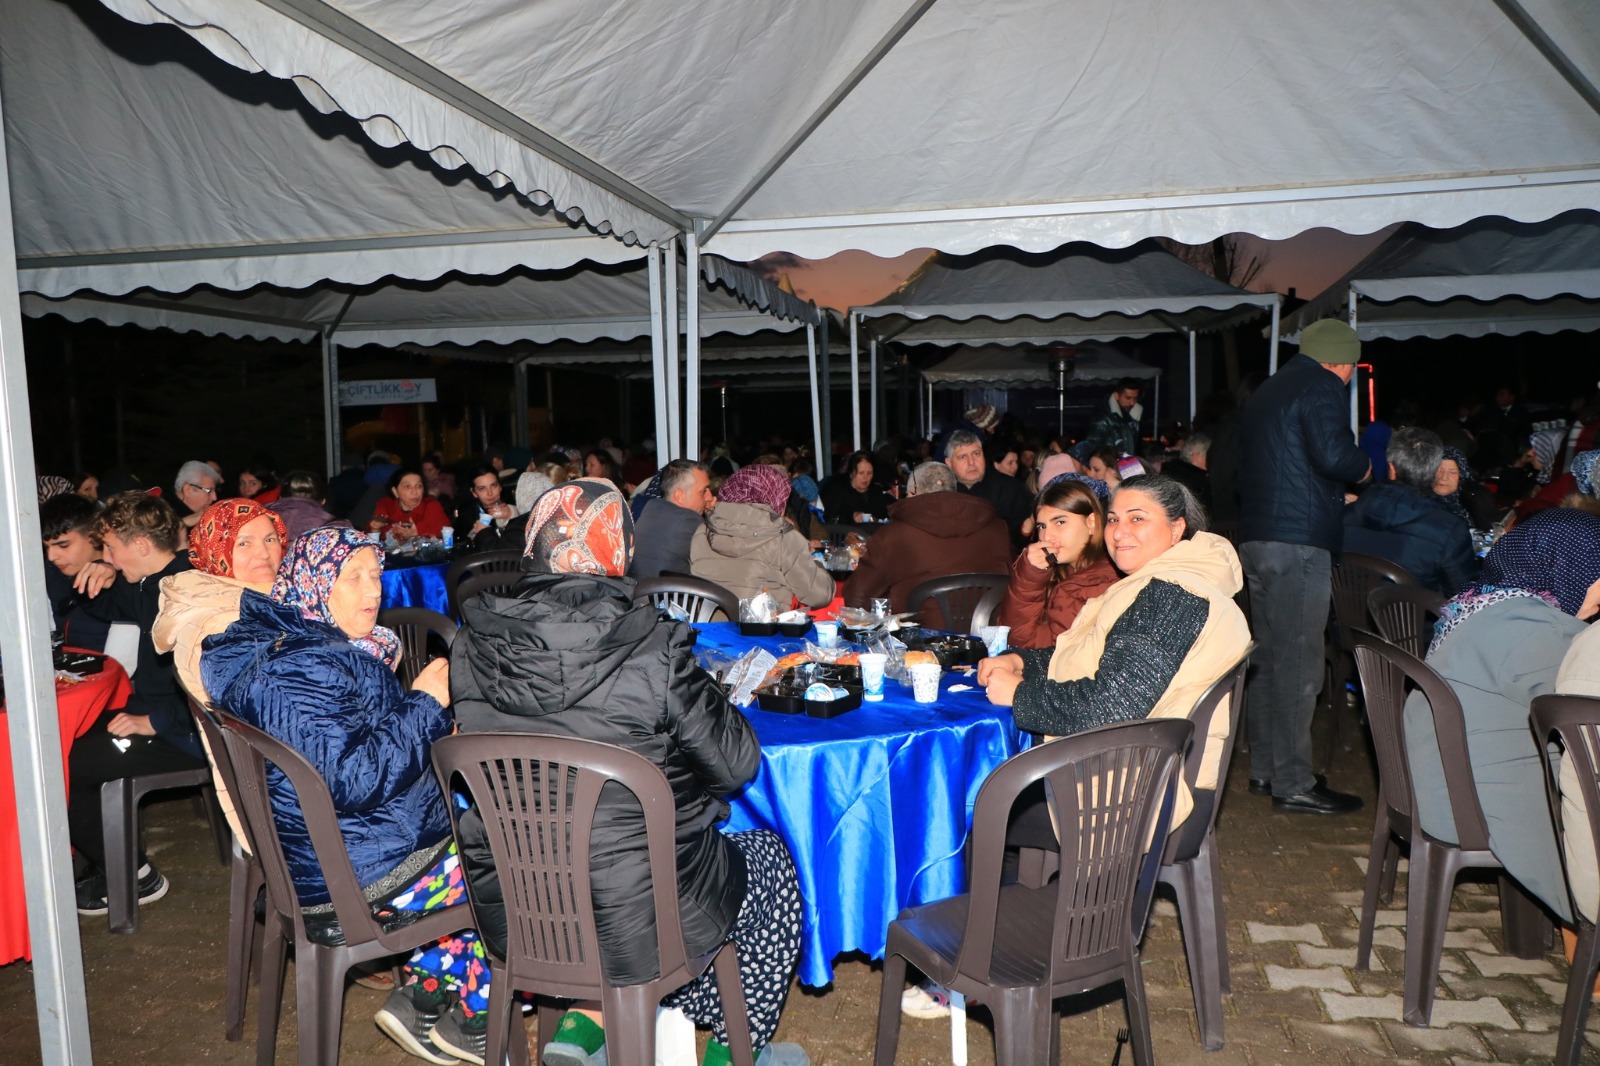 Yalova Ciftlikkoy Belediye Mahalle Iftarlari Birlik Beraberlik Ramazan Ayi Haber (3)